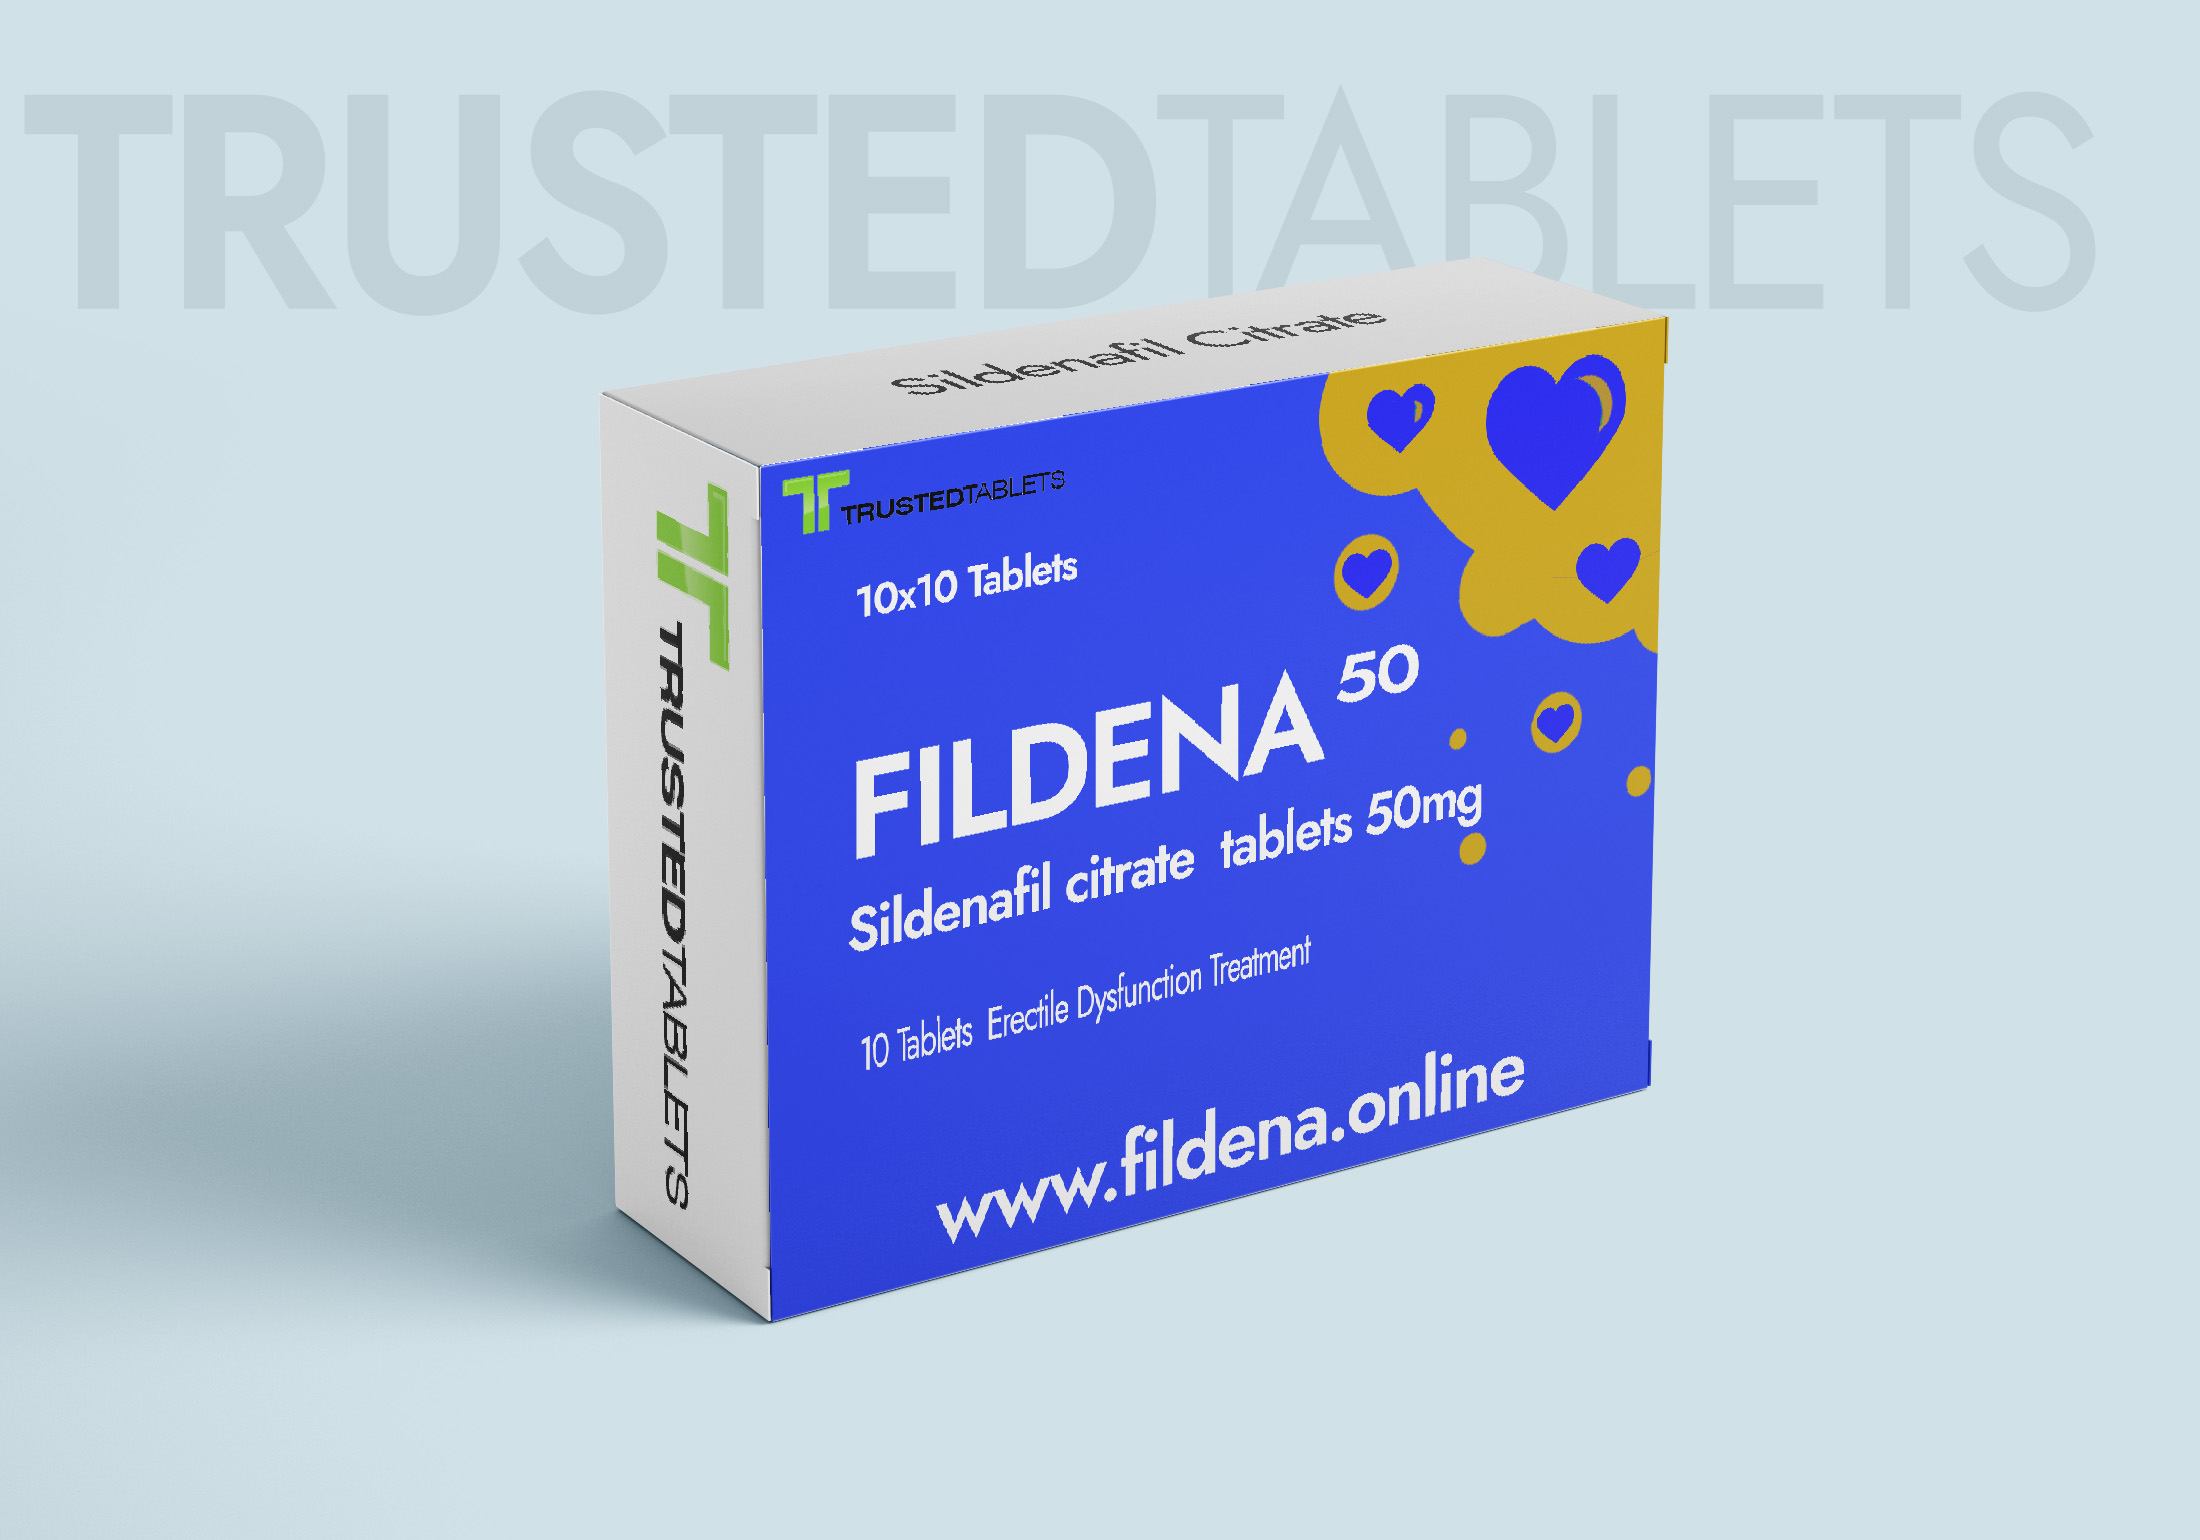 Fildena 50 TrustedTablets